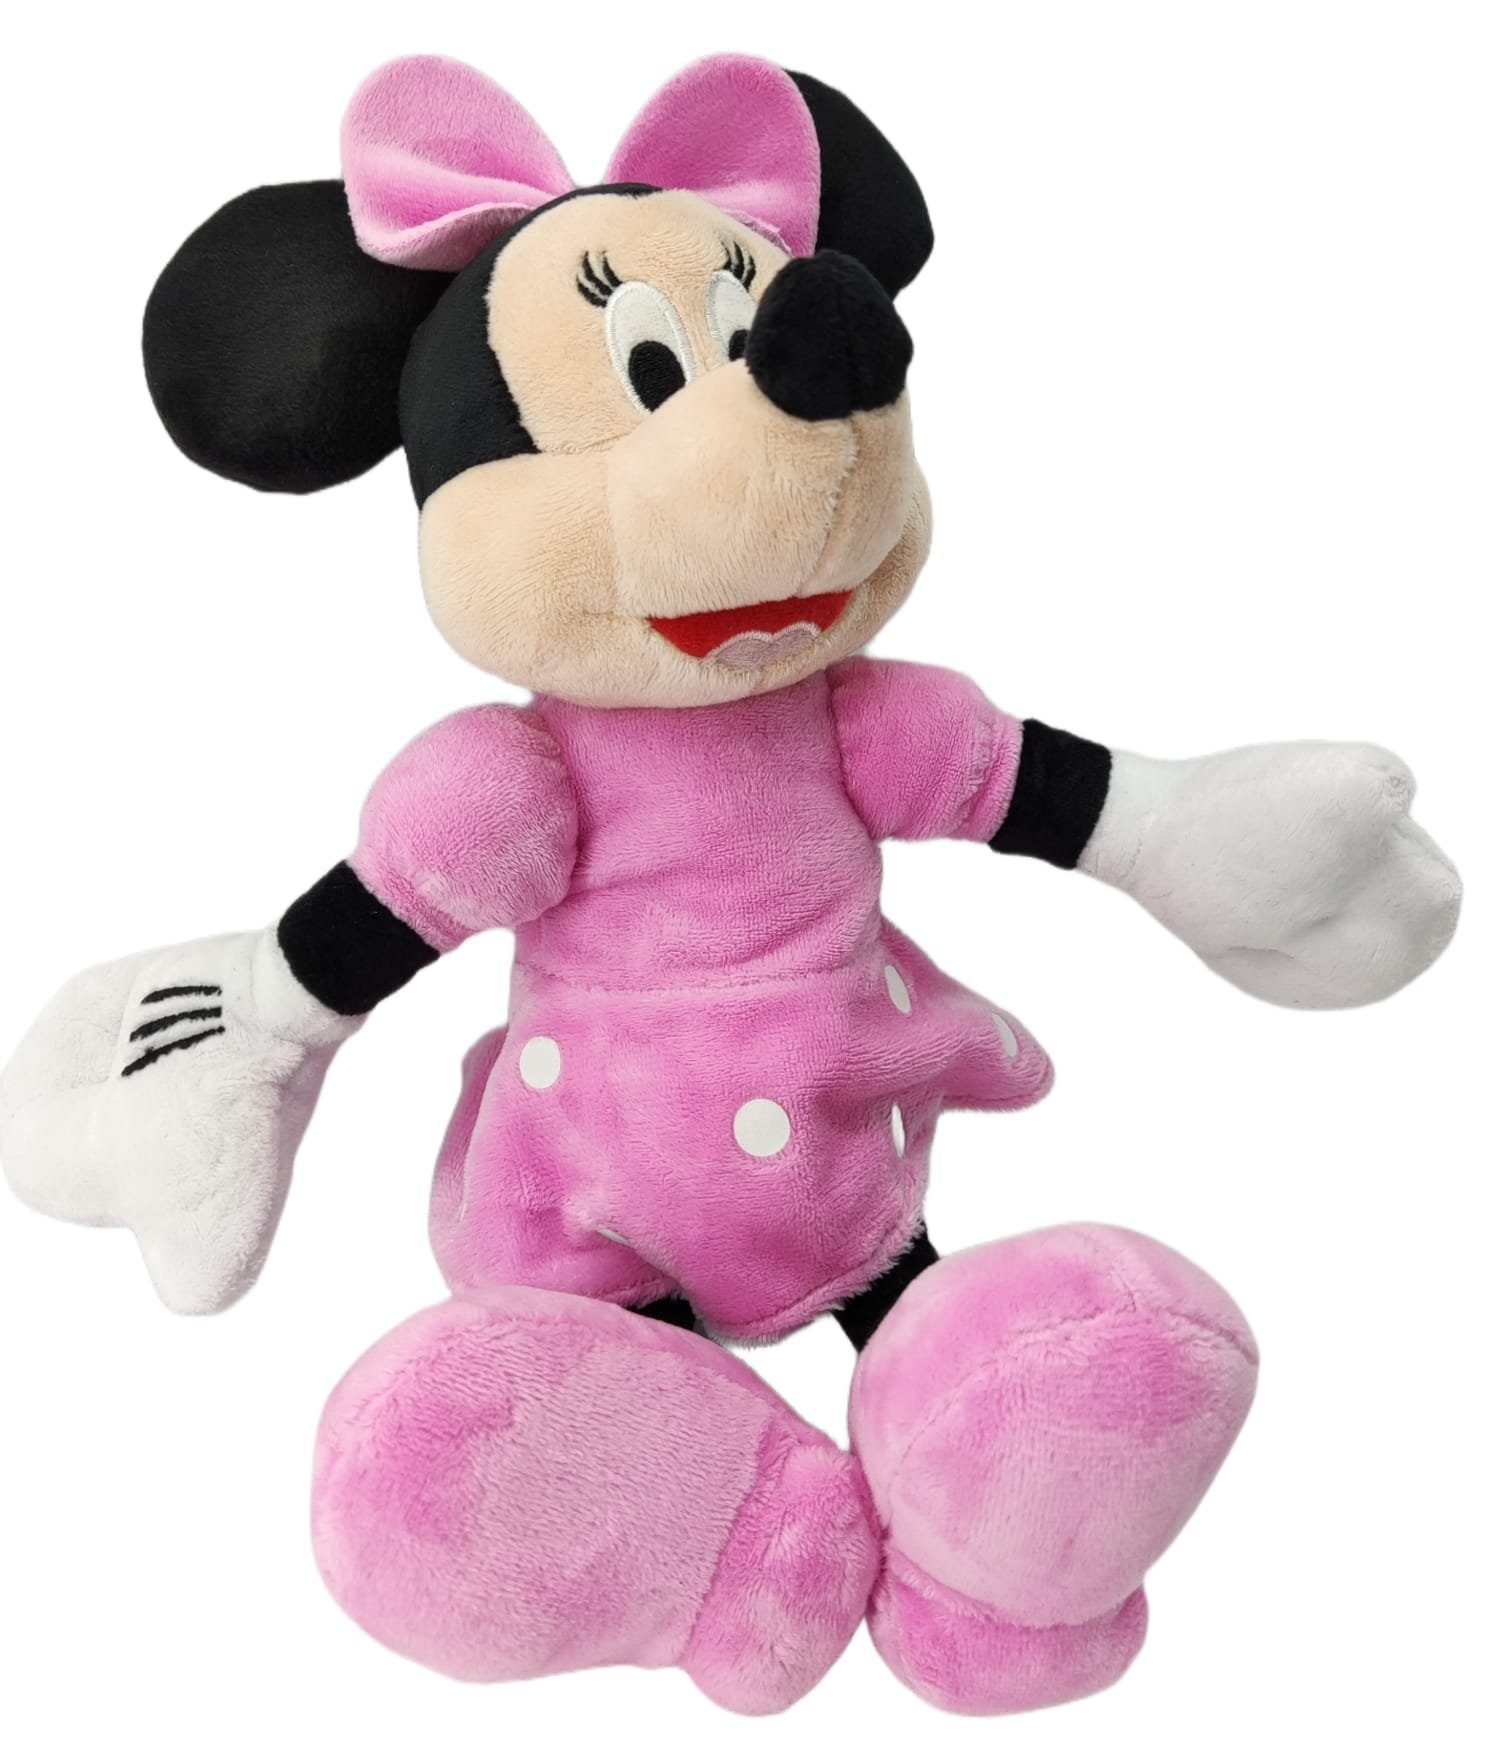 soma Kuscheltier Disney Minnie Mouse 30 cm Plüschtier, Kuscheltier, Micky  Maus, Super weicher Plüsch Stofftier Kuscheltier für Kinder zum spielen